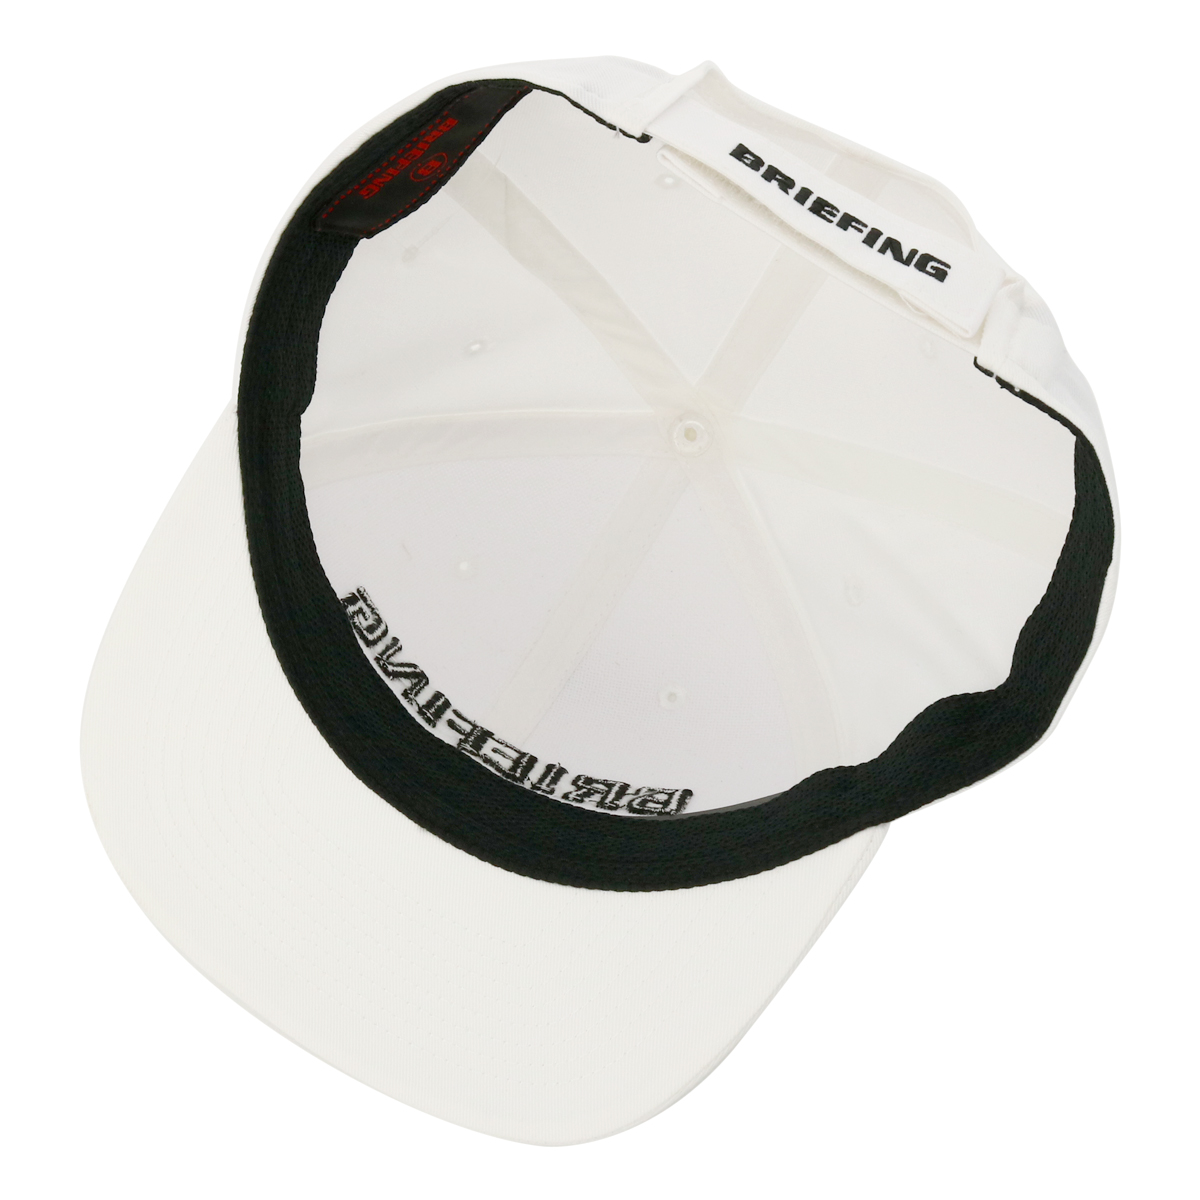 ブリーフィング ゴルフ キャップ 帽子 サイズ調節可能 マジックテープ メンズ レディース BRG221M73 BRIEFING GOLF 帽子 スポーツ アウトドア MS BASIC FLAT VISOR CAP22SS[PO10][即日発送]